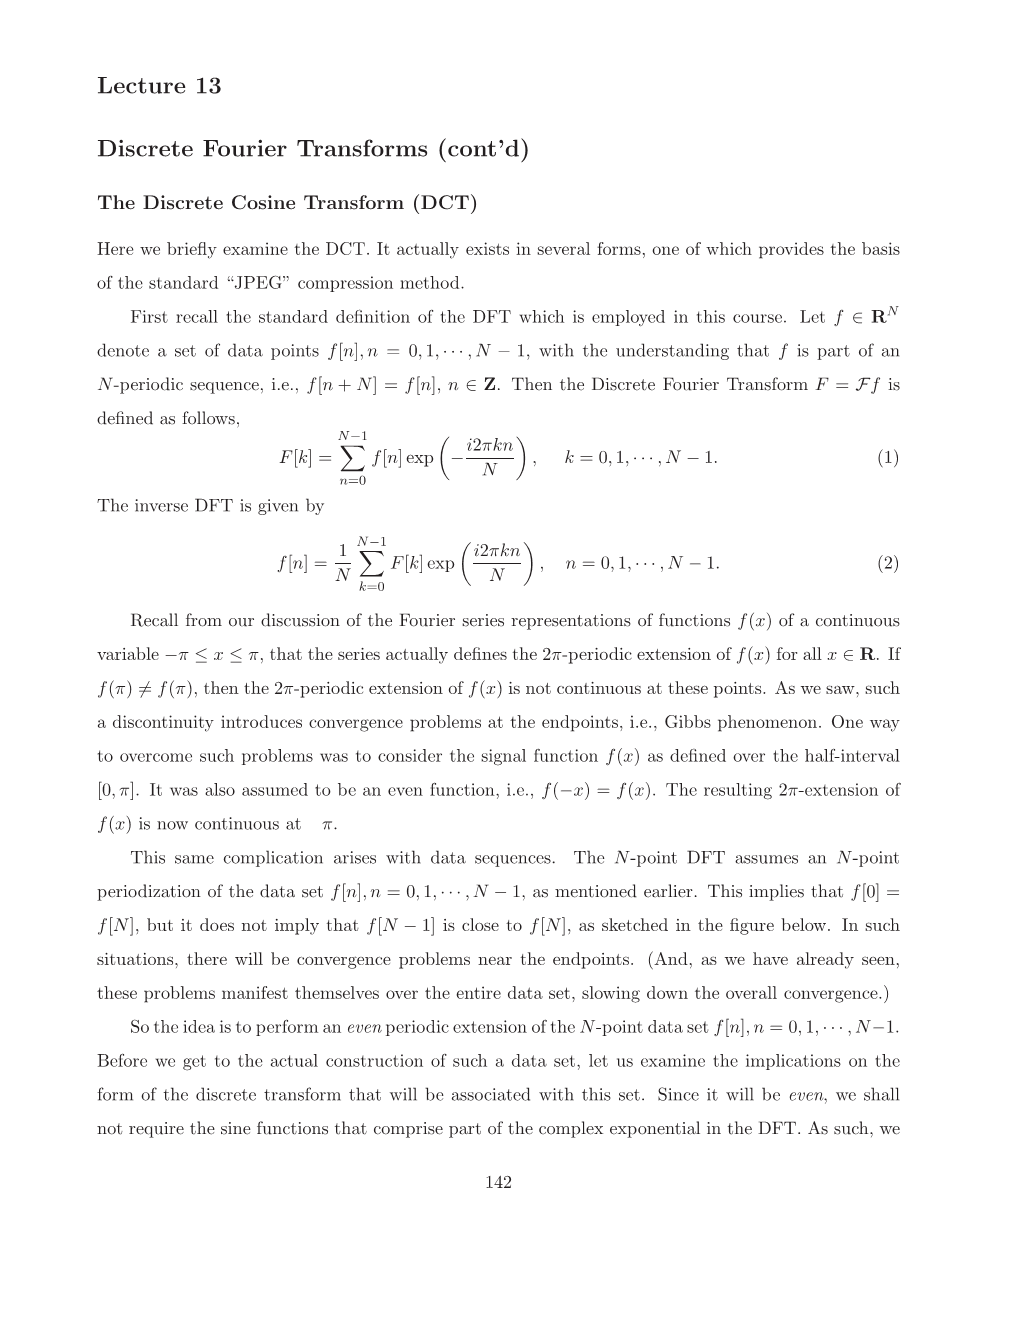 Lecture 13 Discrete Fourier Transforms (Cont'd)